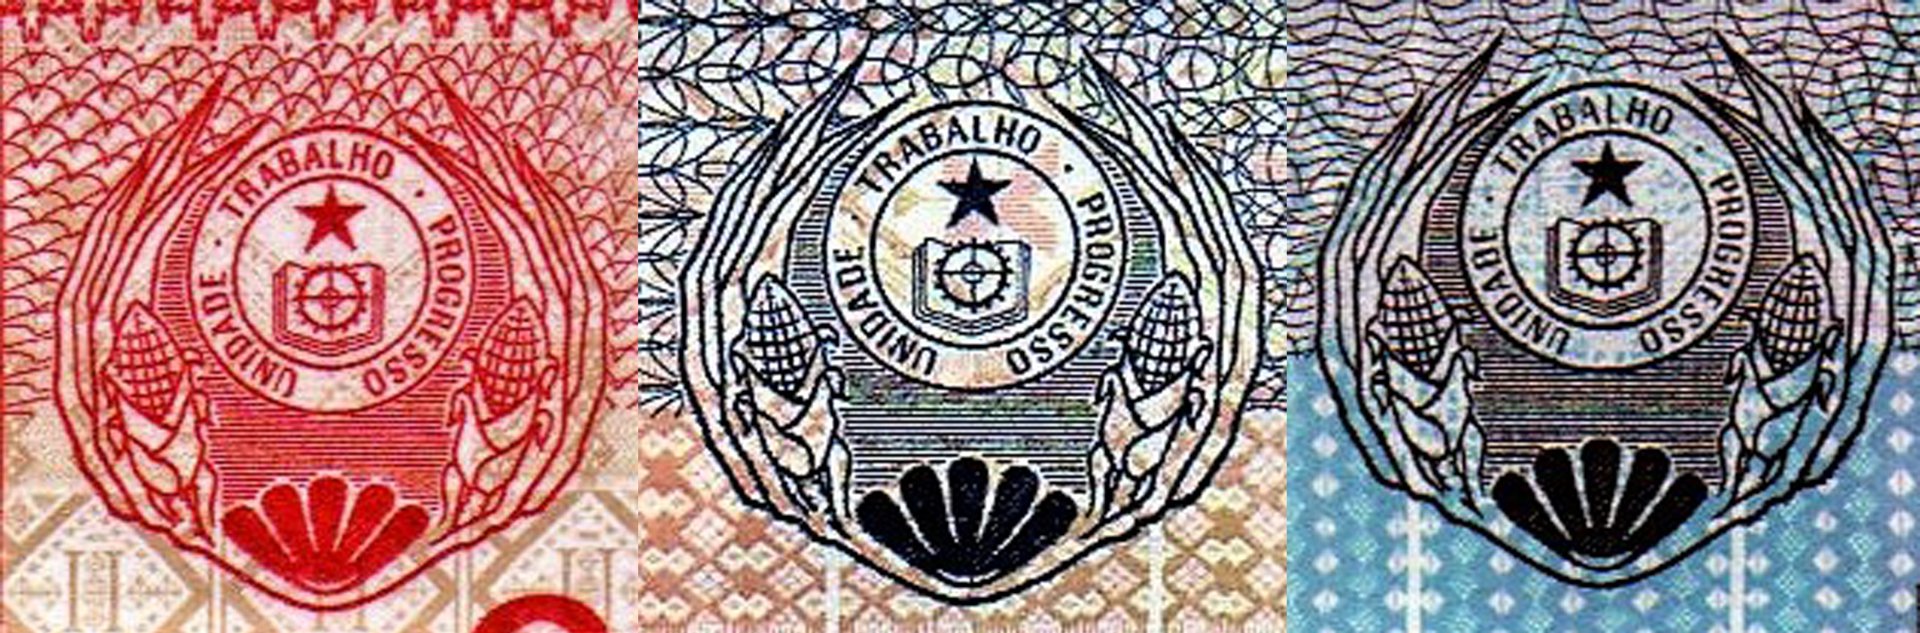 Obr. 3. Státní znak republiky Cabo Verde používaný v období od 05.07.1975 do 22.09.1992 ve variantě s červeným diskem. A) Bankovka P#54 B) Bankovka P#55 C) Bankovka P#56